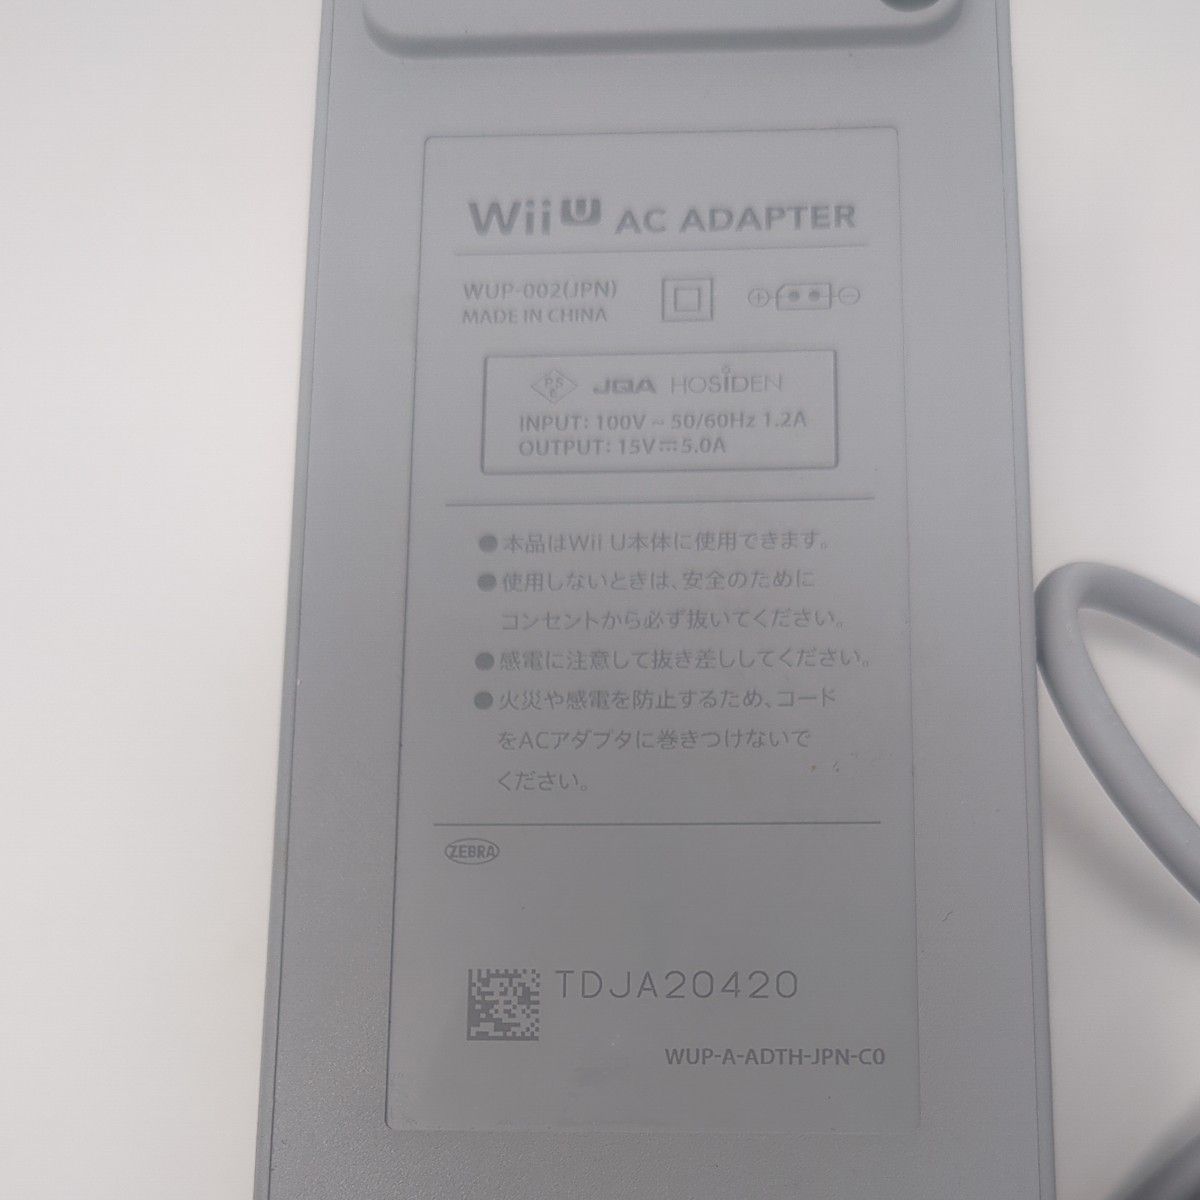 Wii U 任天堂純正 ACアダプタ WUP-002 ( ニンテンドー 電源 ケーブル コード Nintendo 本体用 )